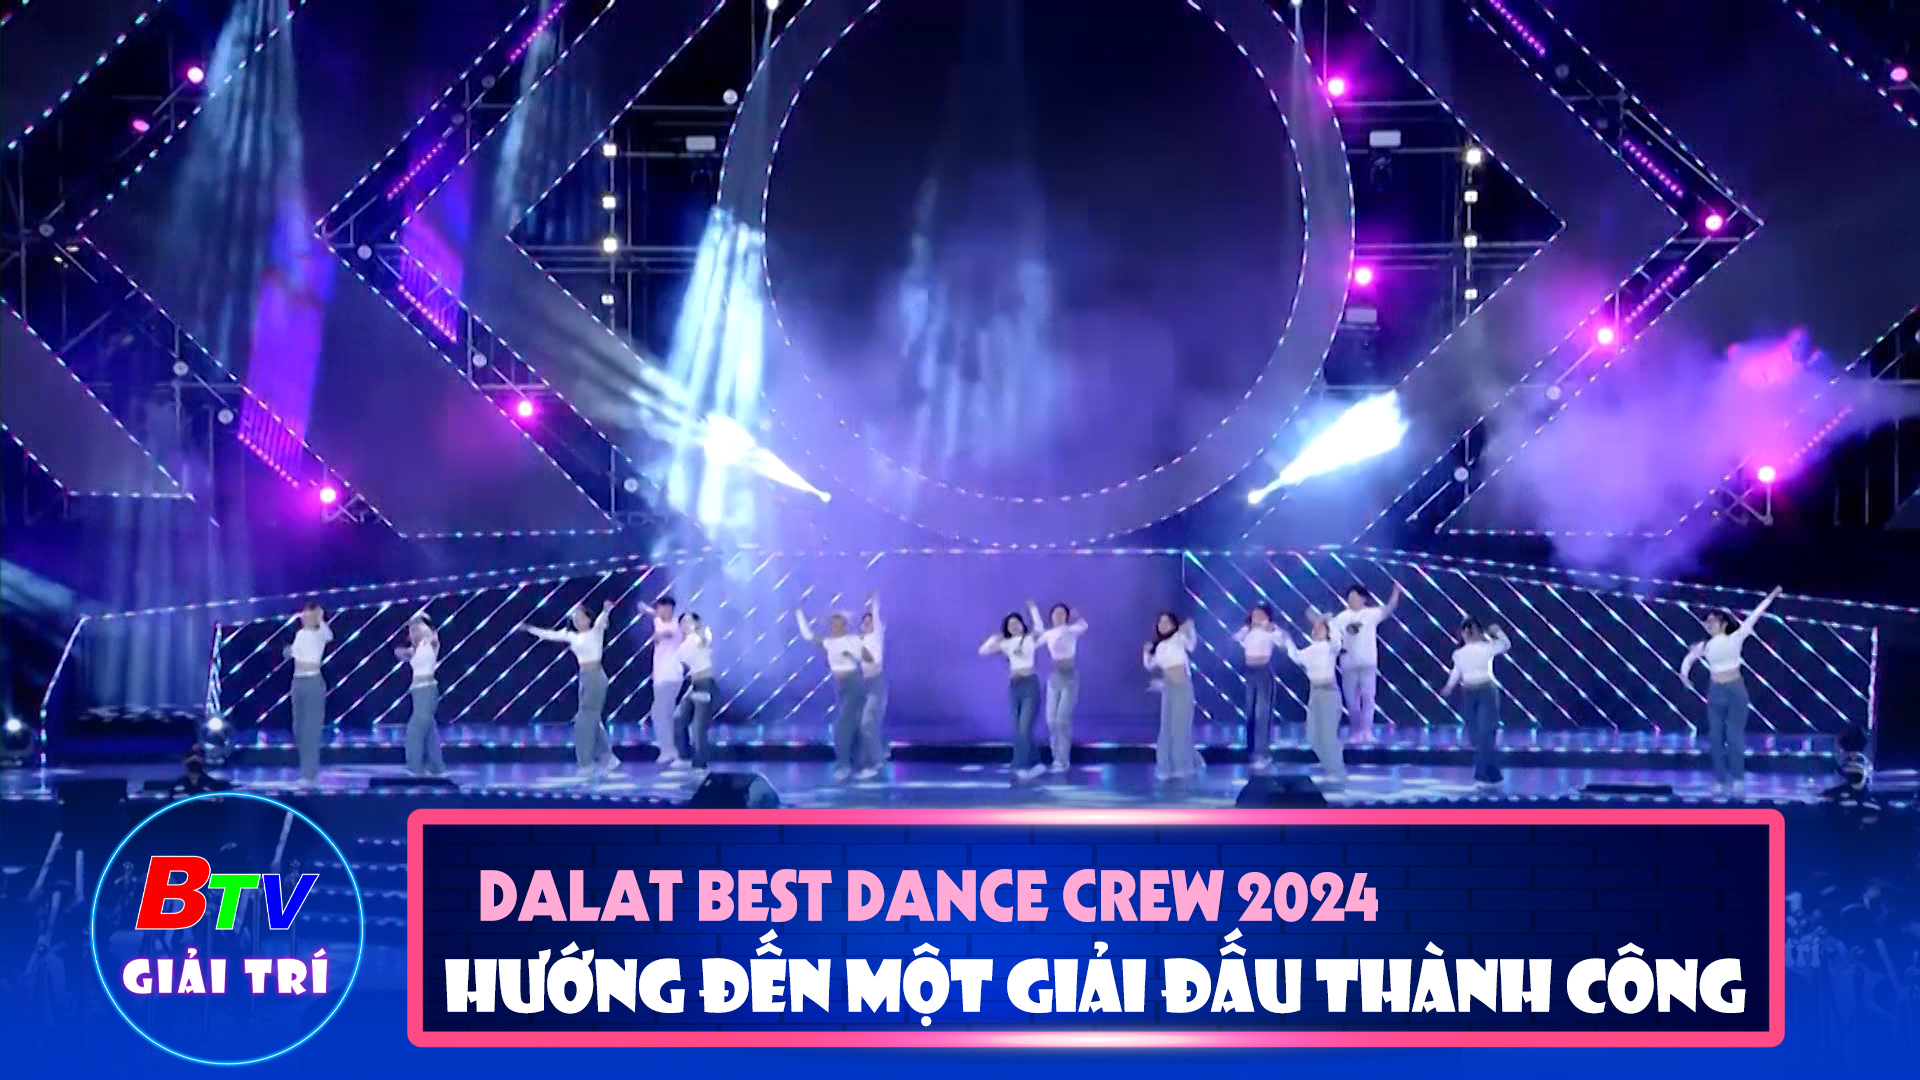 Dalat Best Dance Crew 2024 - Hoa Sen Home International Cup Hướng đến một giải đấu thành công